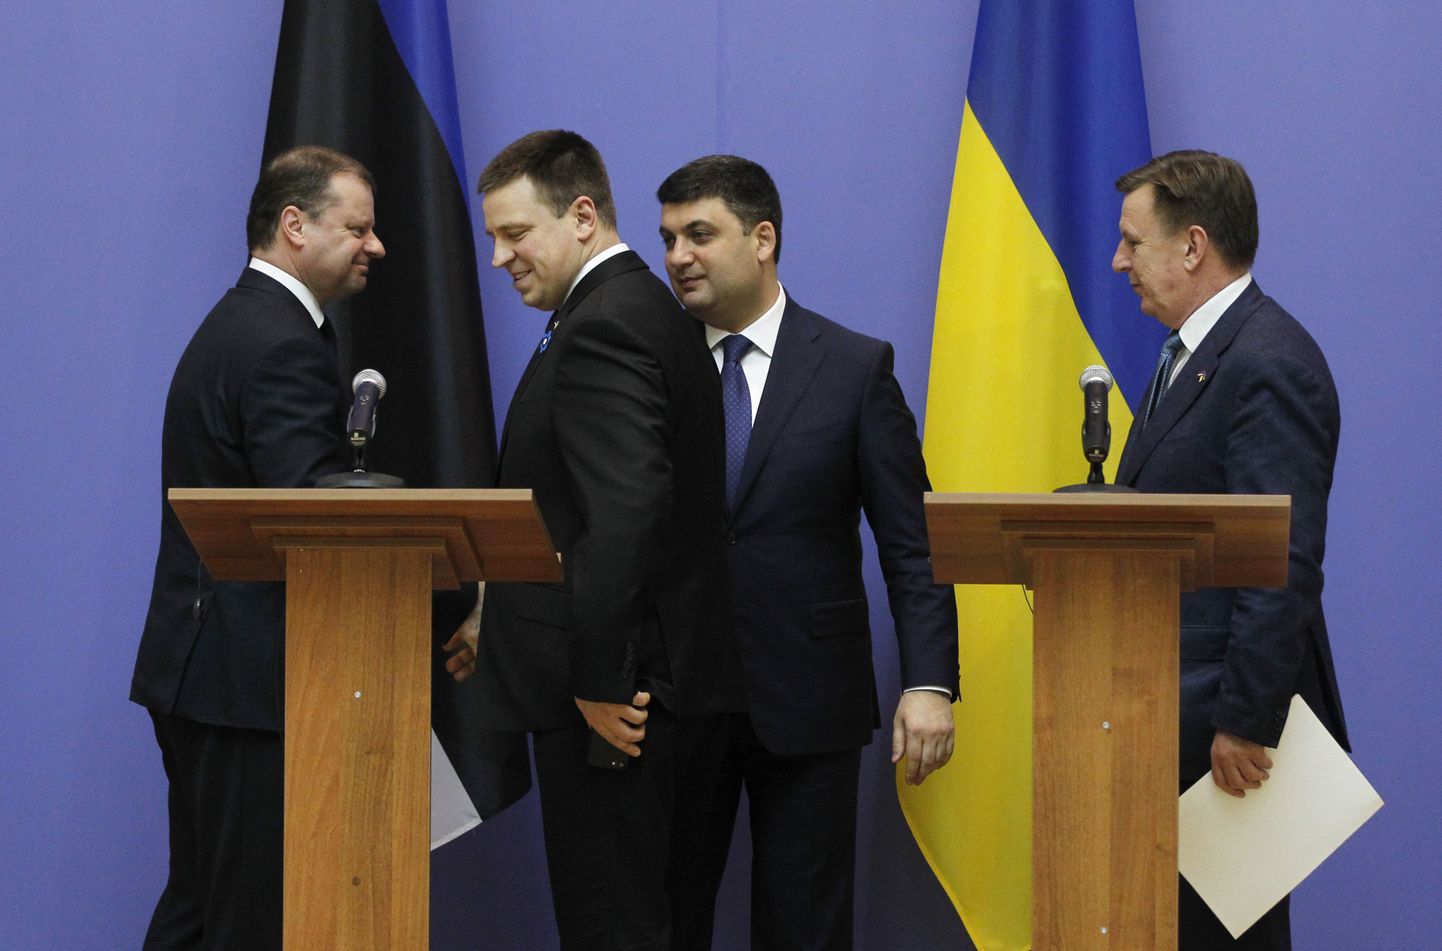 Leedu peaminister Saulius Skvernelis, Jüri Ratas, Ukraina peaminister Volodõmõr Groisman ja Läti peaminister Maris Kucinskis Kiievis.